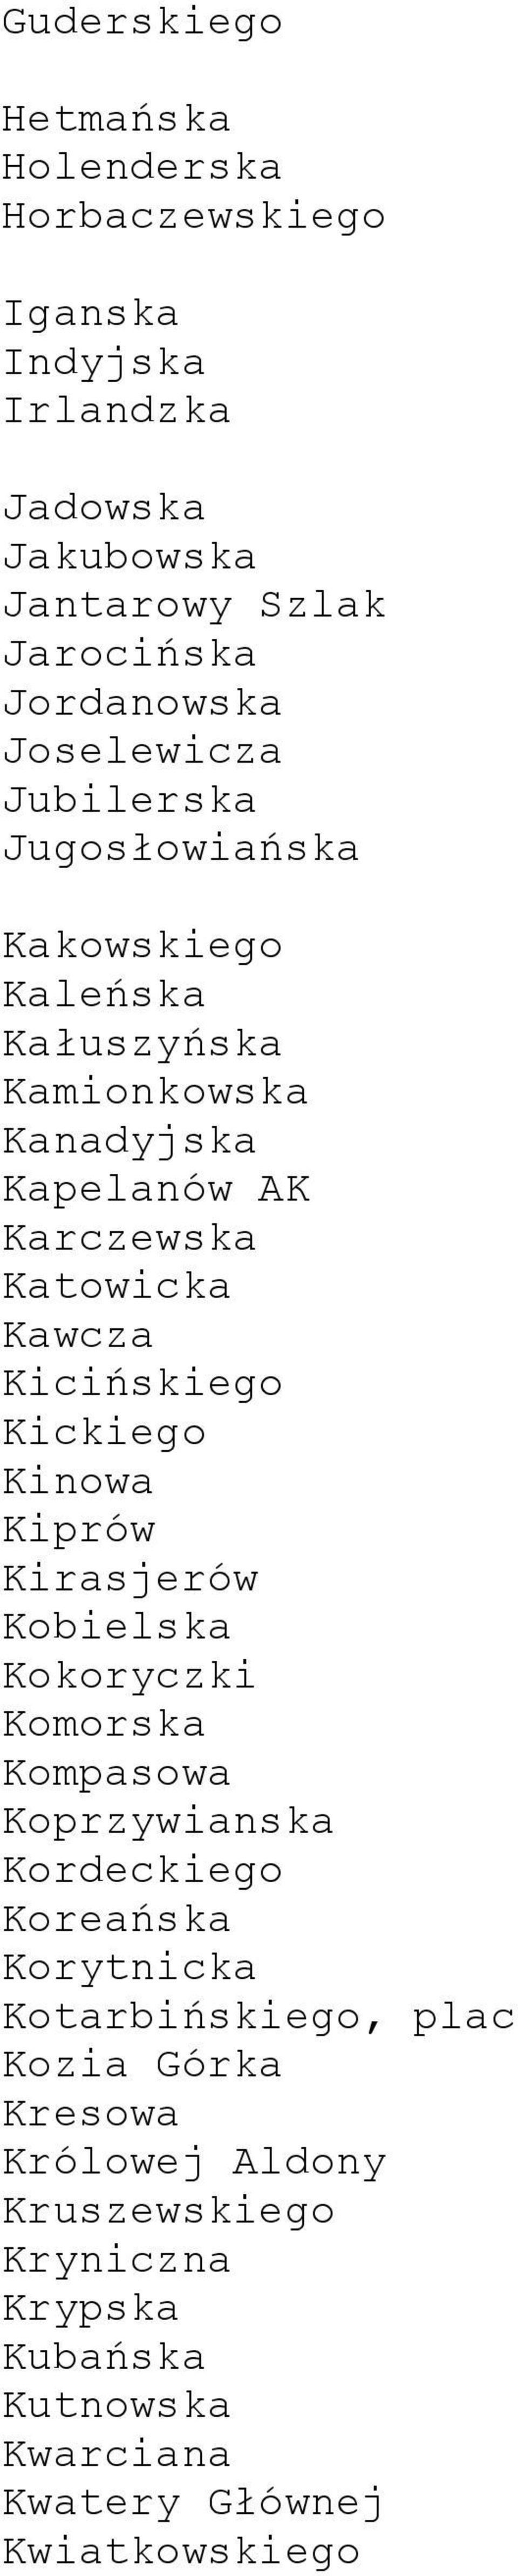 Spis ulic dzielnicy Praga Południe. 1 Praskiego Pułku 21 Pułku Piechoty Dzieci  Warszawy 1831 Roku, plac - PDF Free Download